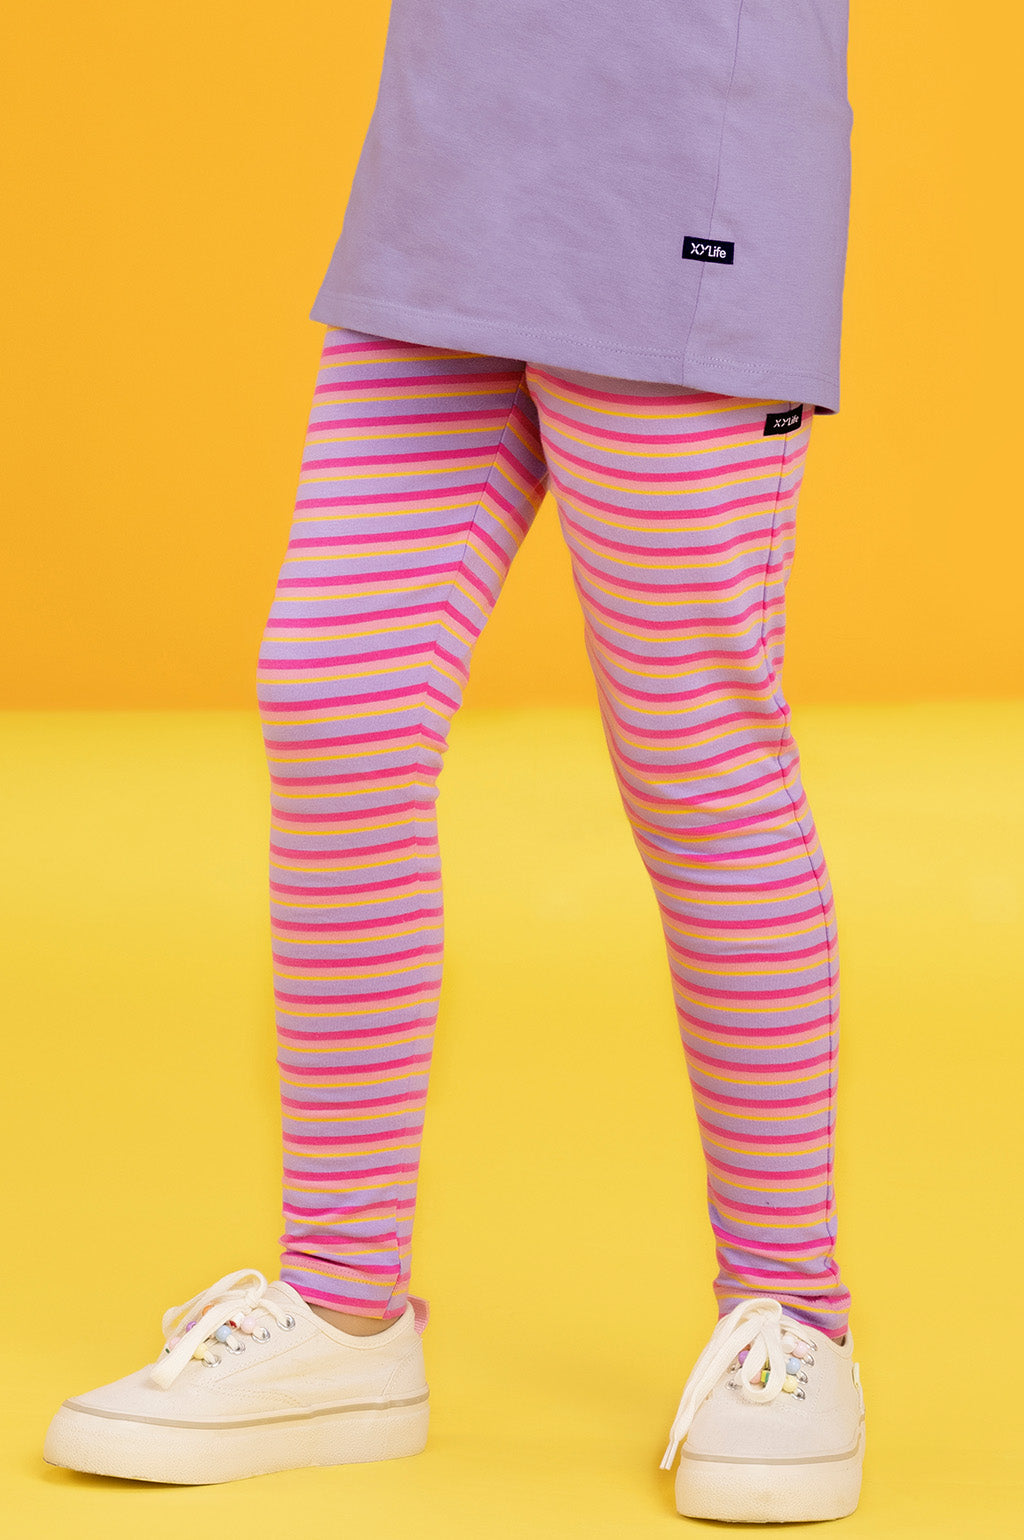 DKNY Girls Iridescent Leggings - Kids Life Clothing - Children's